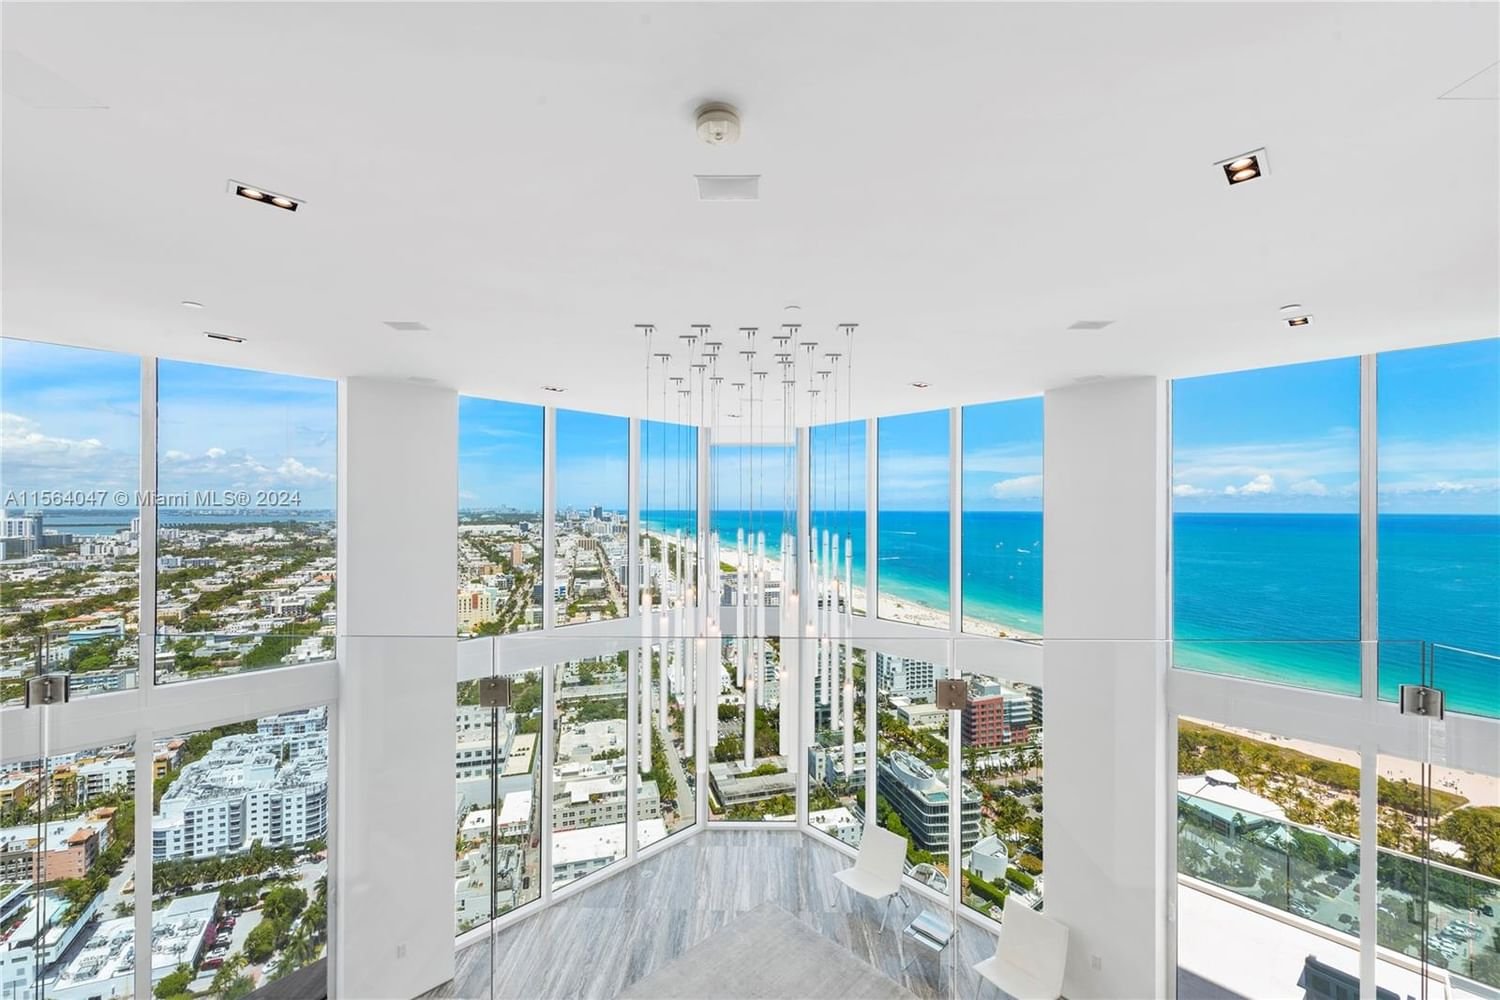 Real estate property located at 300 Pointe Drive LPH 4005/4006, Miami-Dade County, PORTOFINO TOWER CONDO, Miami Beach, FL